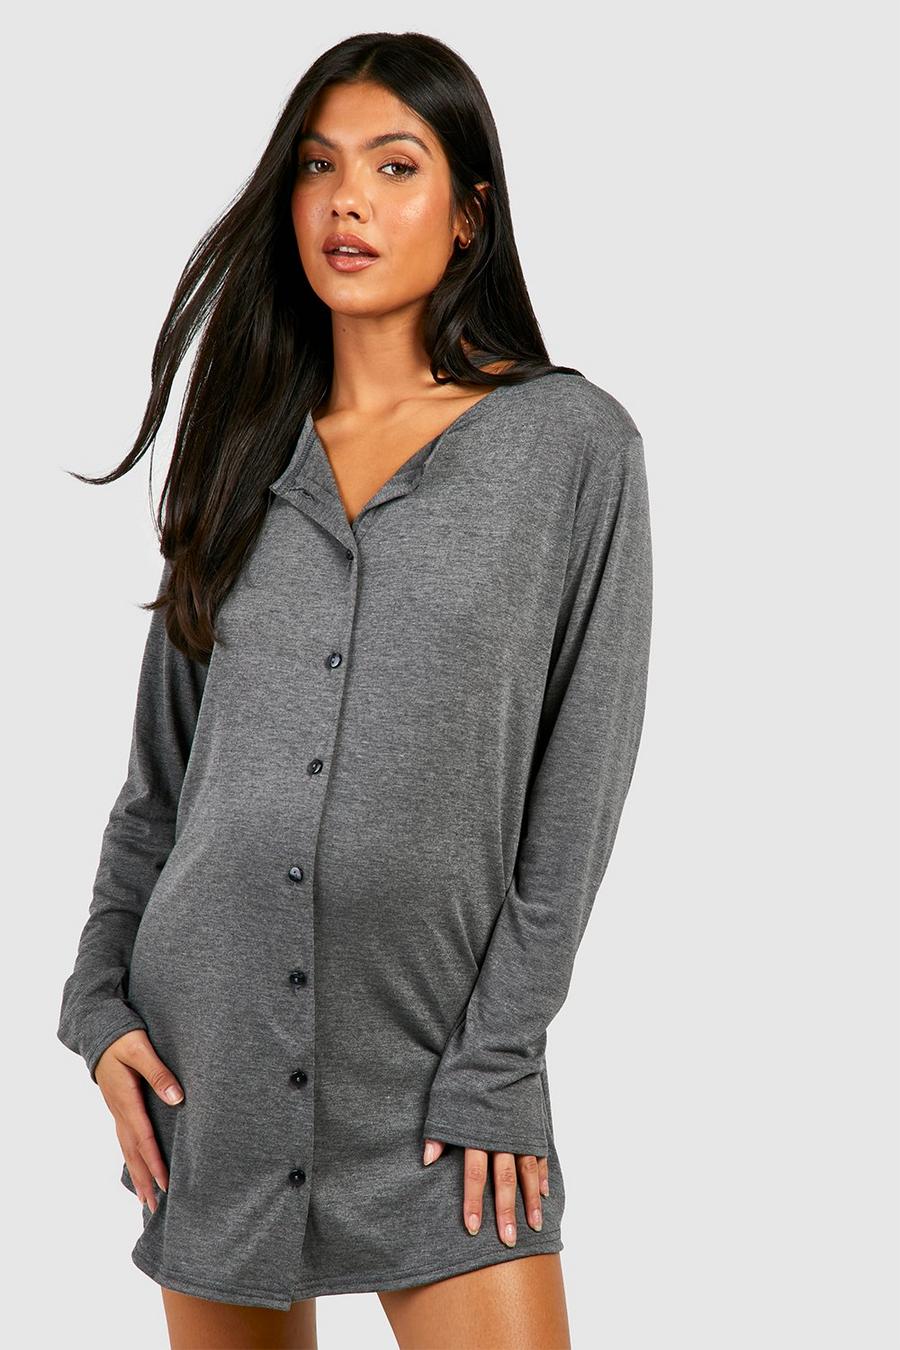 Maternité - Nuisette de grossesse en jersey, Charcoal gris